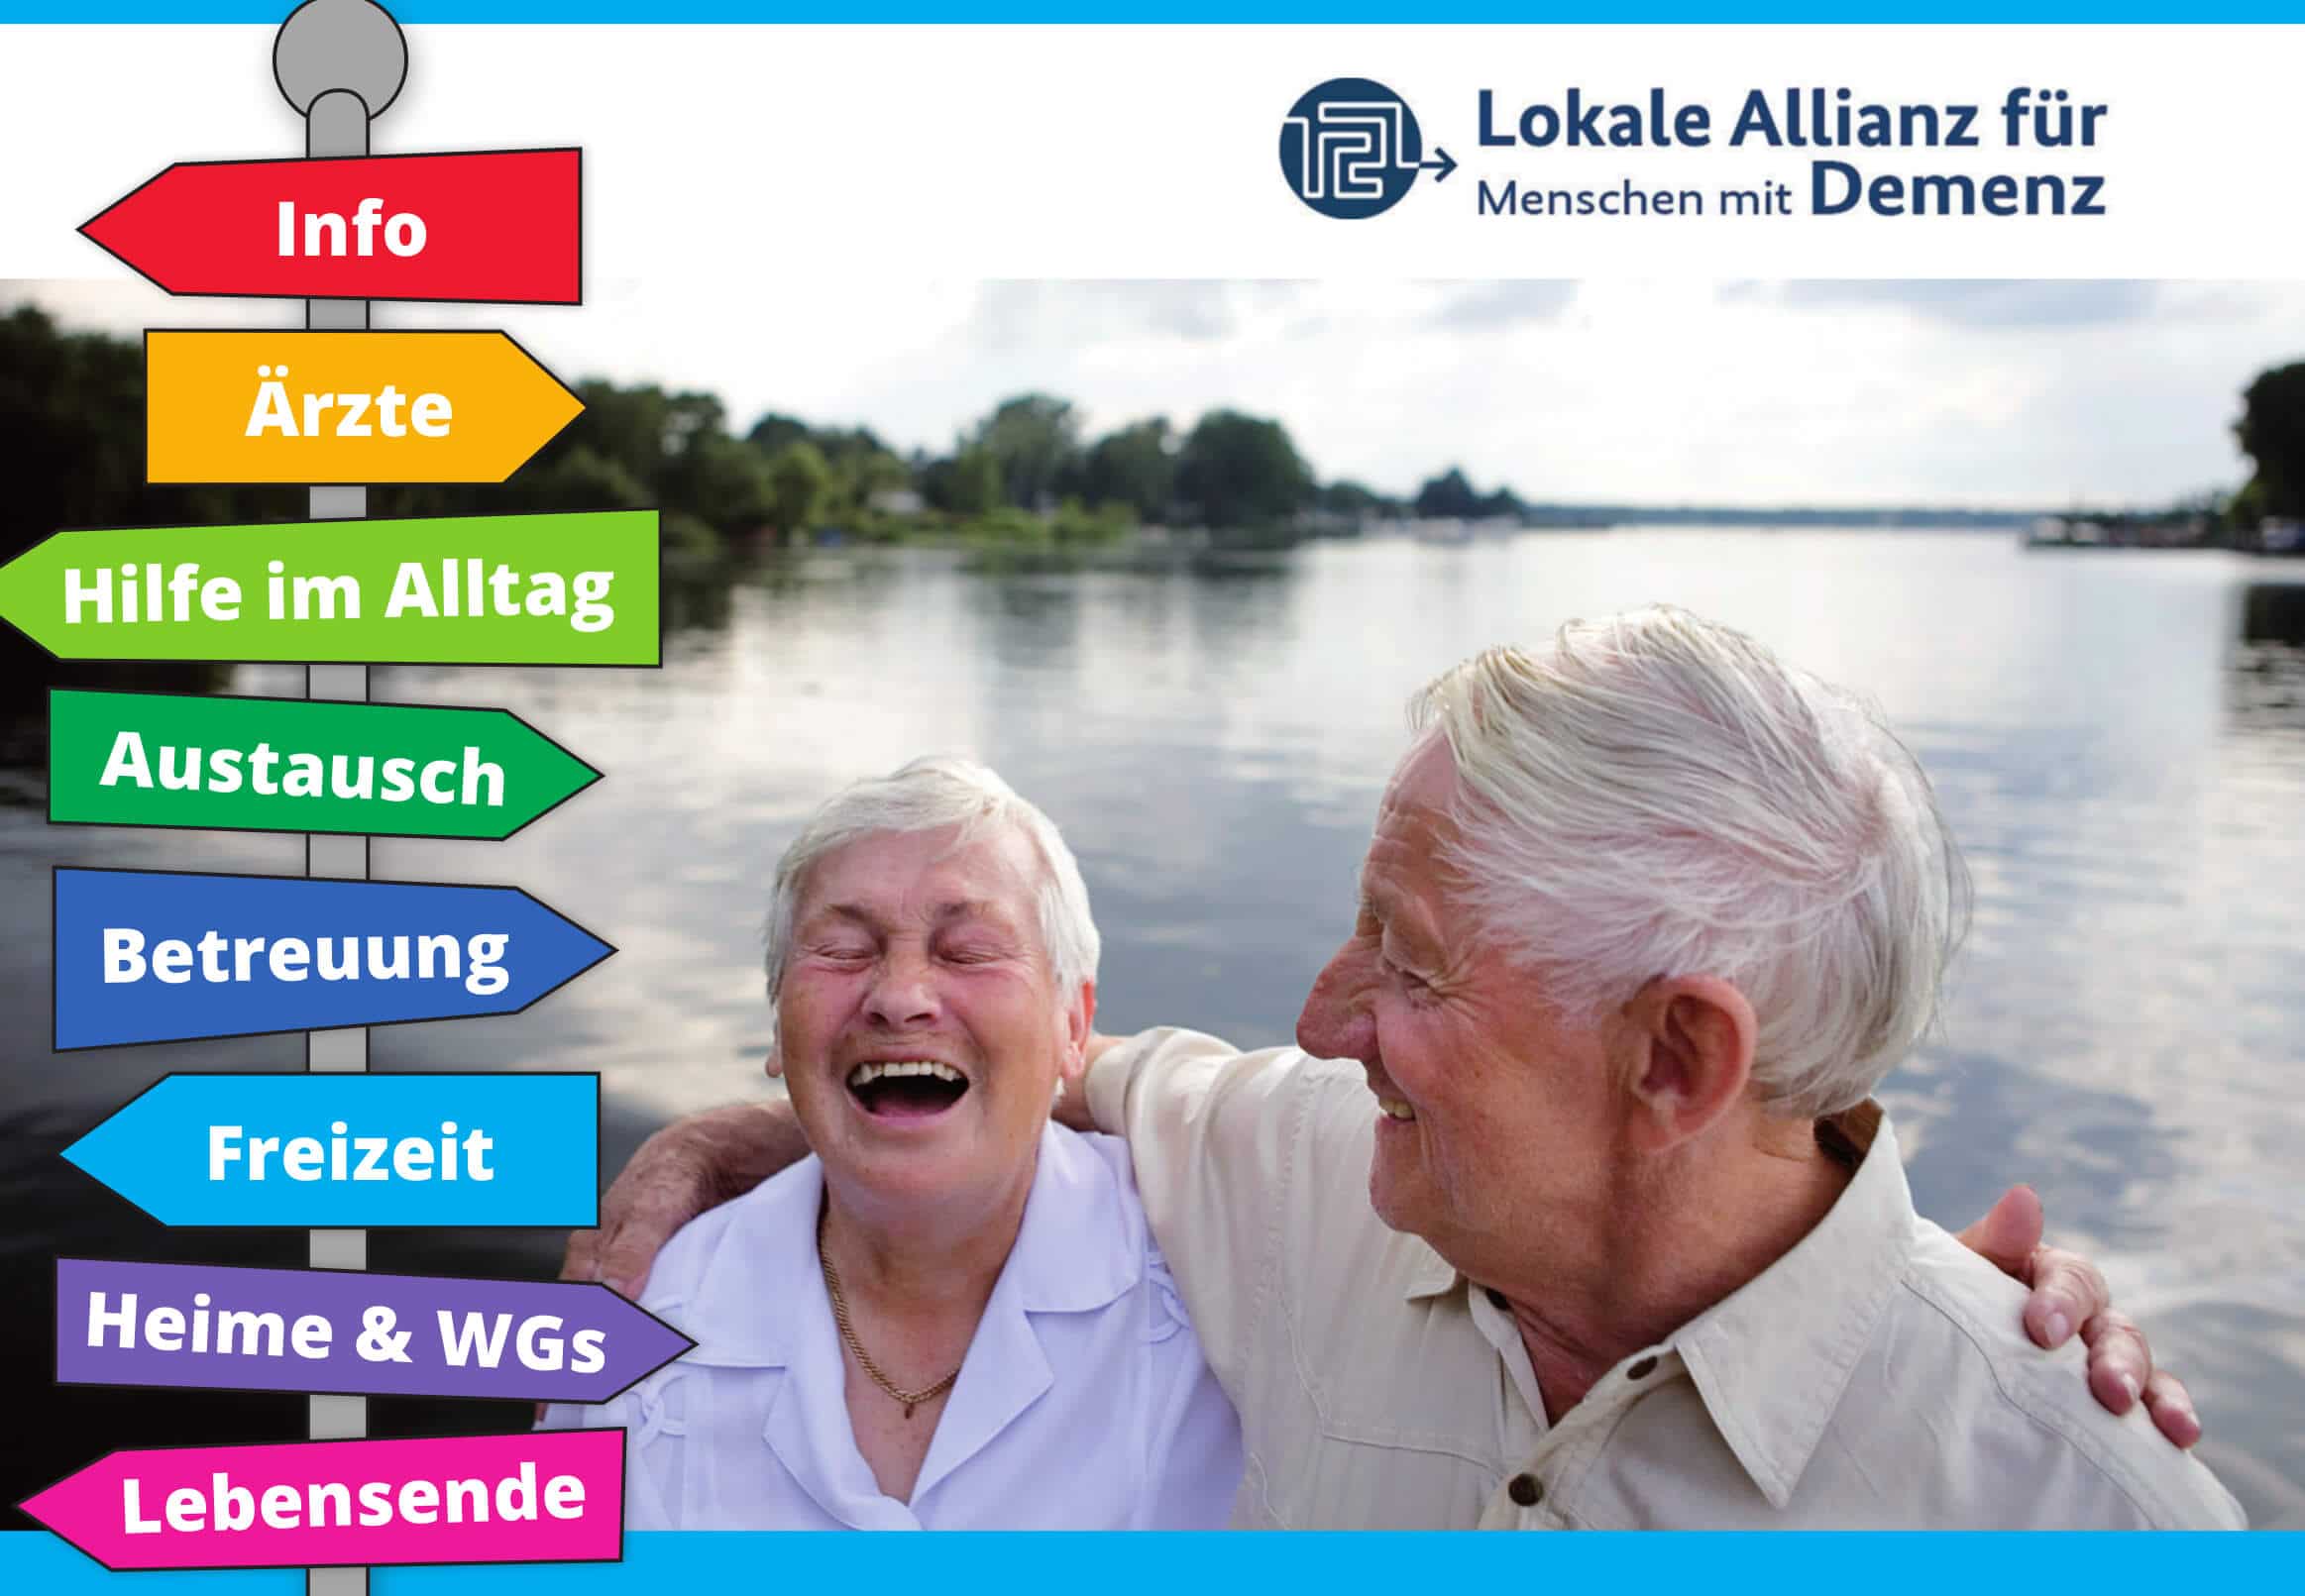 „Wegweiser für ein Leben mit Demenz in Steglitz-Zehlendorf“: Lokale Allianz verteilt Broschüre